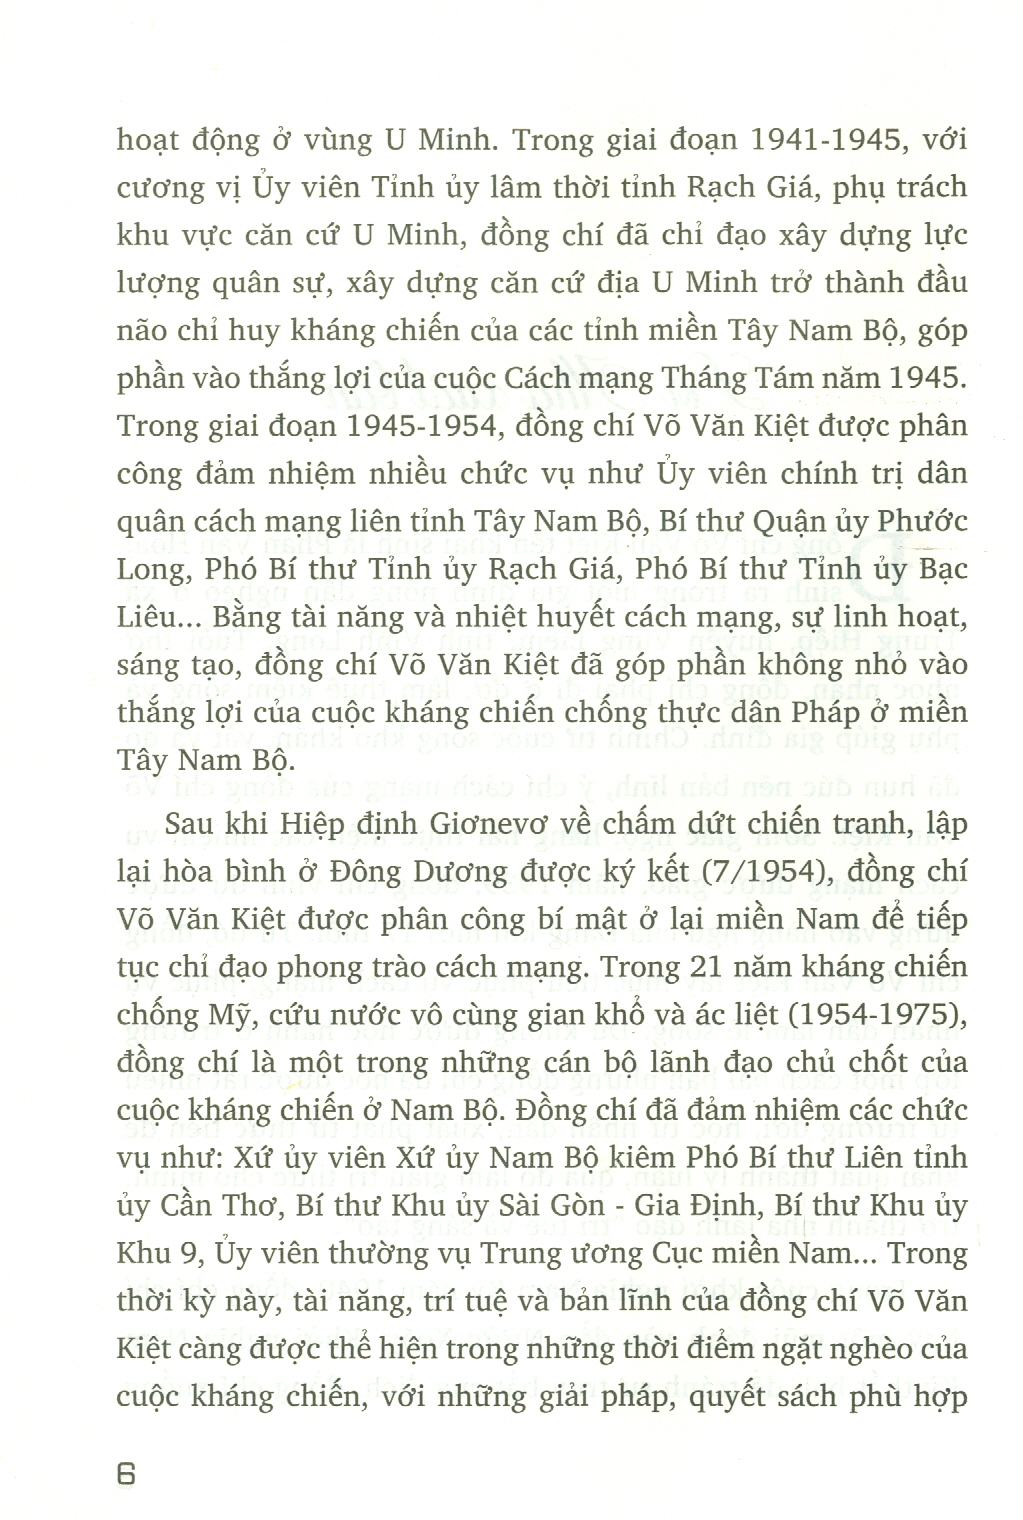 Võ Văn Kiệt - Trí Tuệ Và Sáng Tạo, Tập 1: Từ Cuộc Khởi Nghĩa Nam Kỳ Đến Ngày Ký Hiệp Định Giơnevơ Về Việt Nam